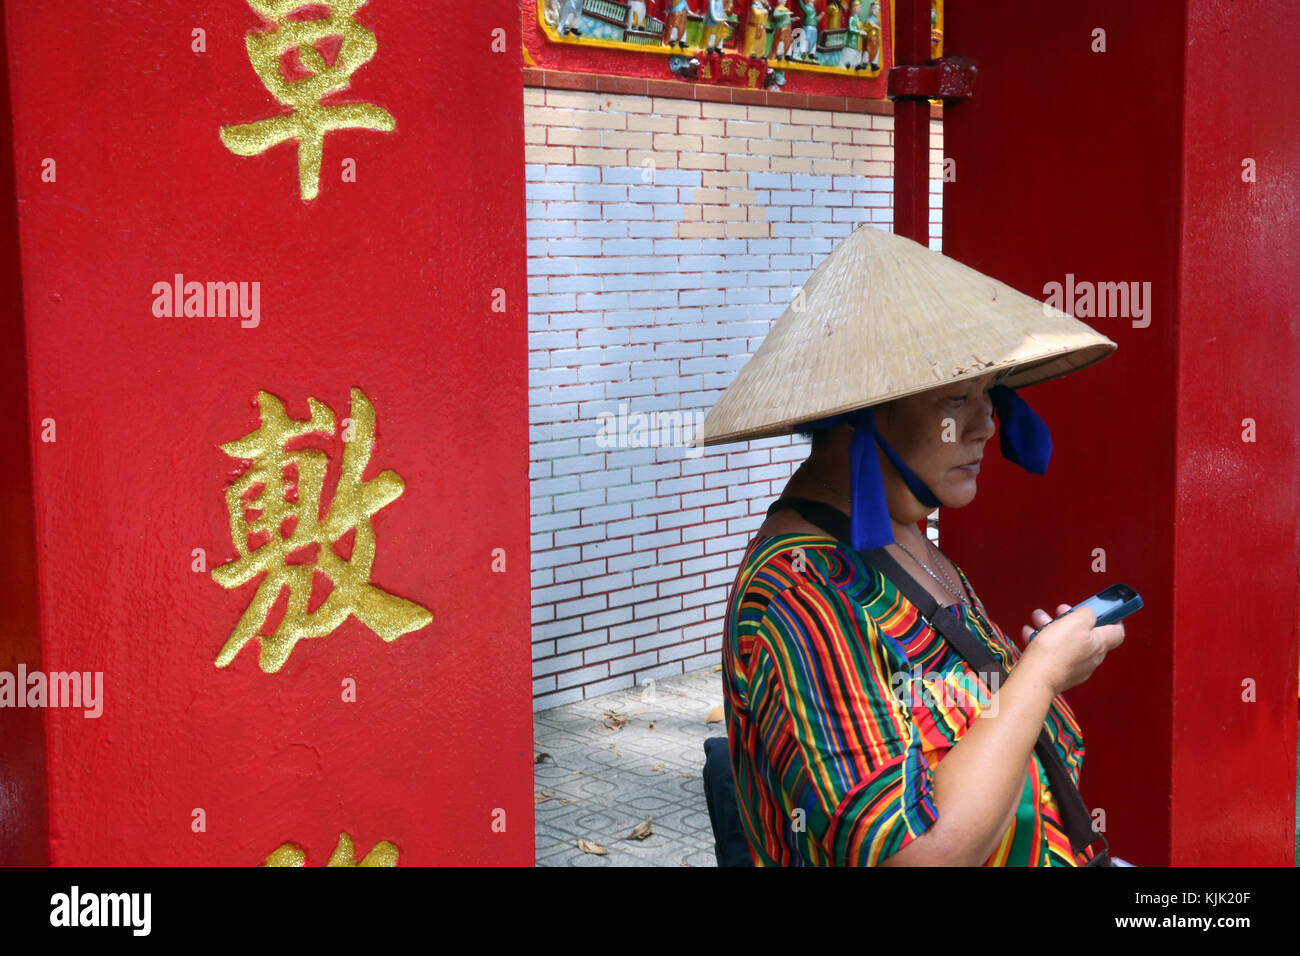 Caractères chinois sur pilier et vietnamienne avec smartphone. Ho Chi Minh Ville. Le Vietnam. Banque D'Images